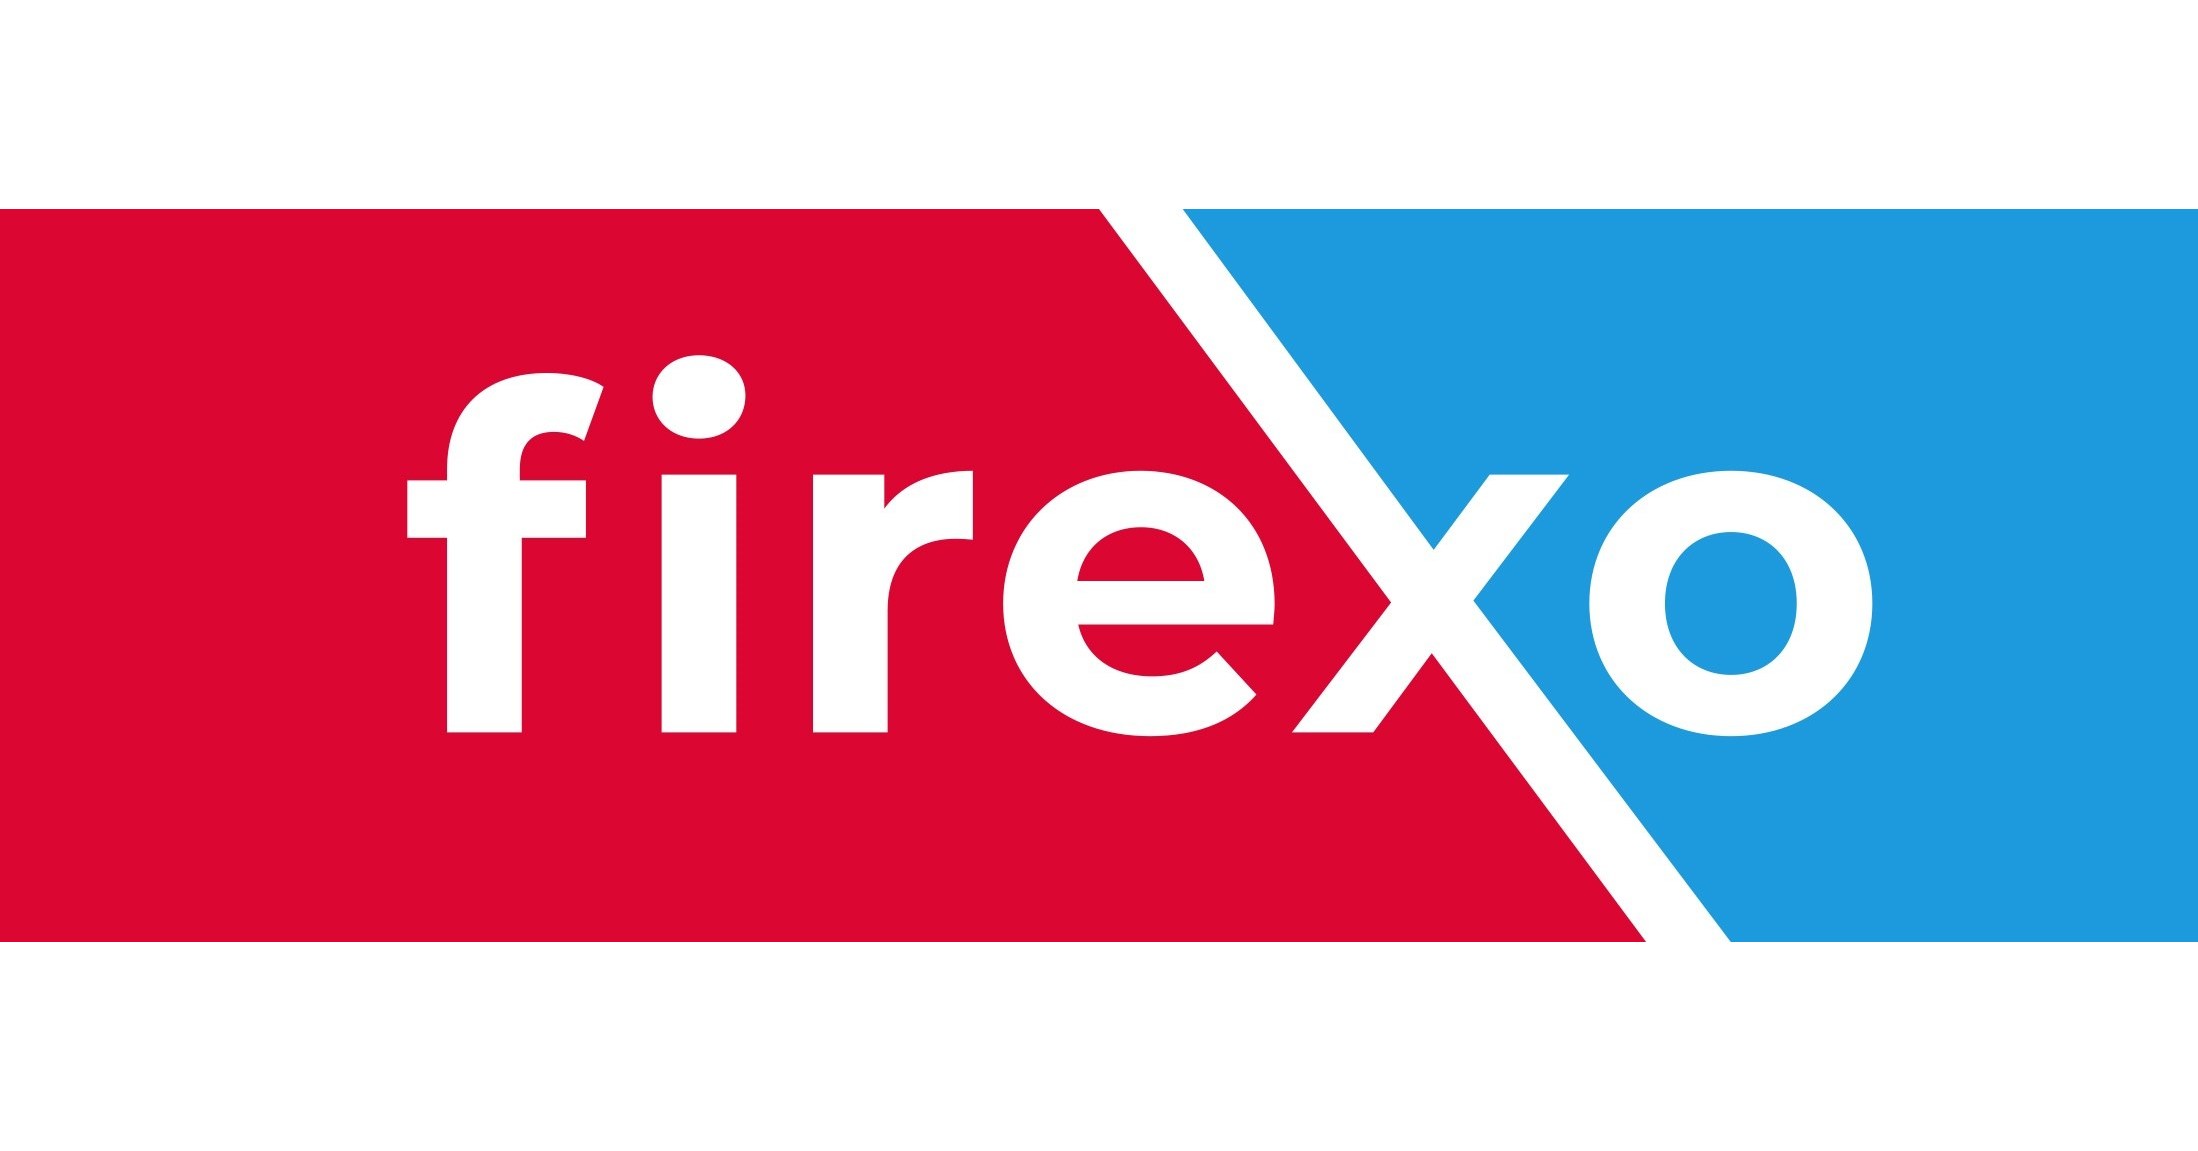 Firexo Extincteur Tous Feux (6 Litre) - 7 in 1 Extincteur d'incendie -  Electrique et Domestique Extincteur Feu - Extincteurs pour la Maison, Le